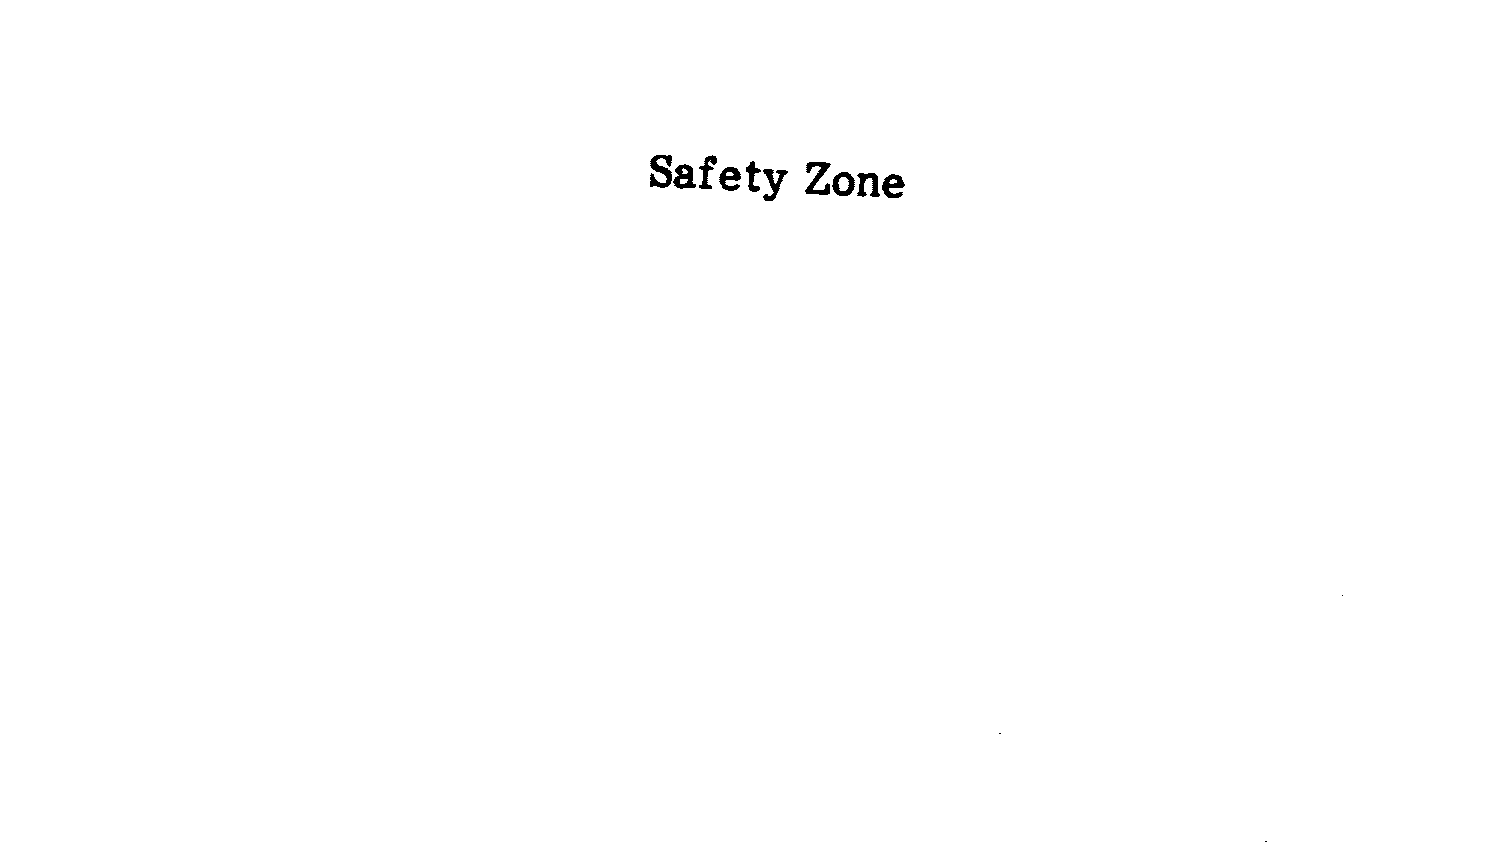 SAFETY ZONE